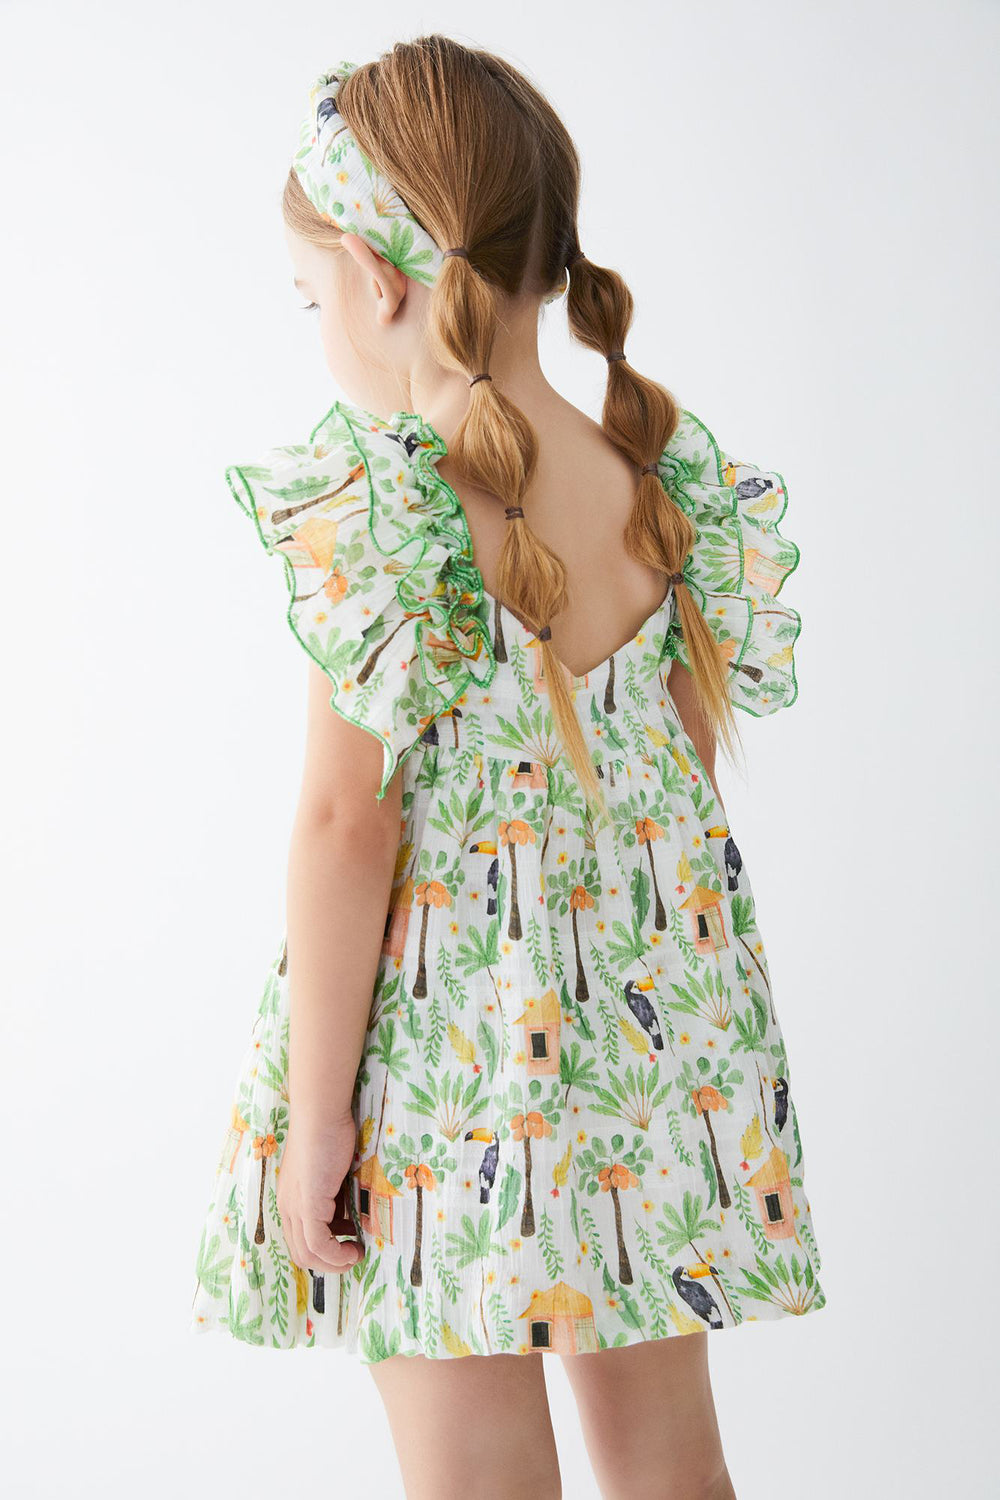 Tartaleta "Eden" Green Jungle Print Dress | iphoneandroidapplications